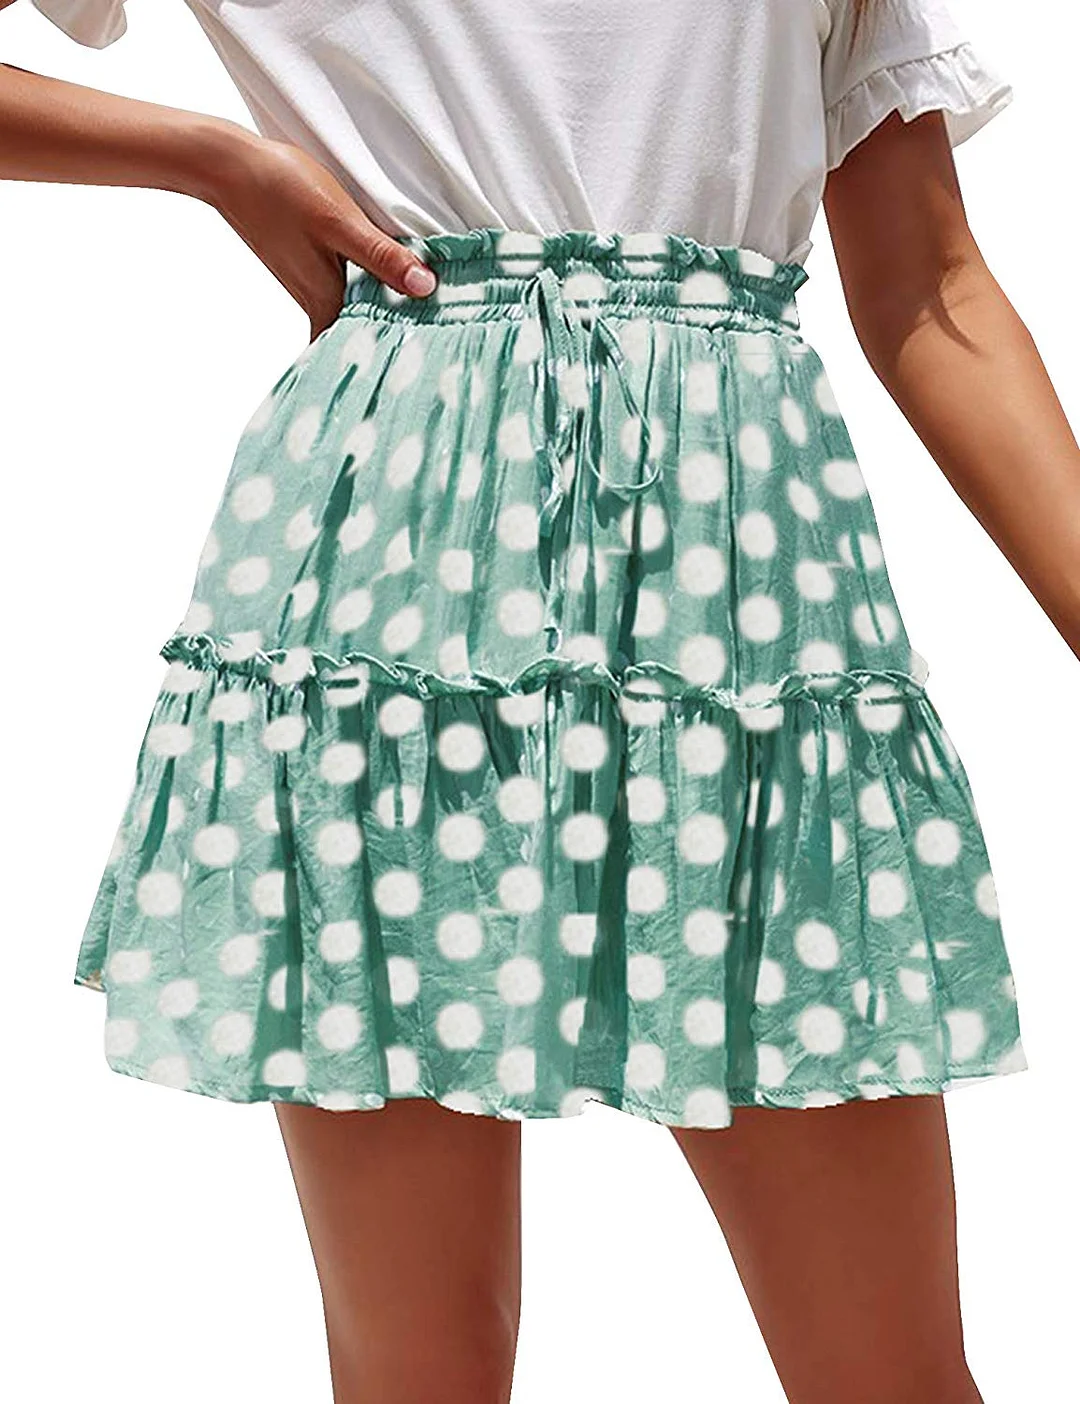 Short Skirt Women's Flared Short Skirt Polka Dot Pleated Mini Skater Skirt with Drawstring